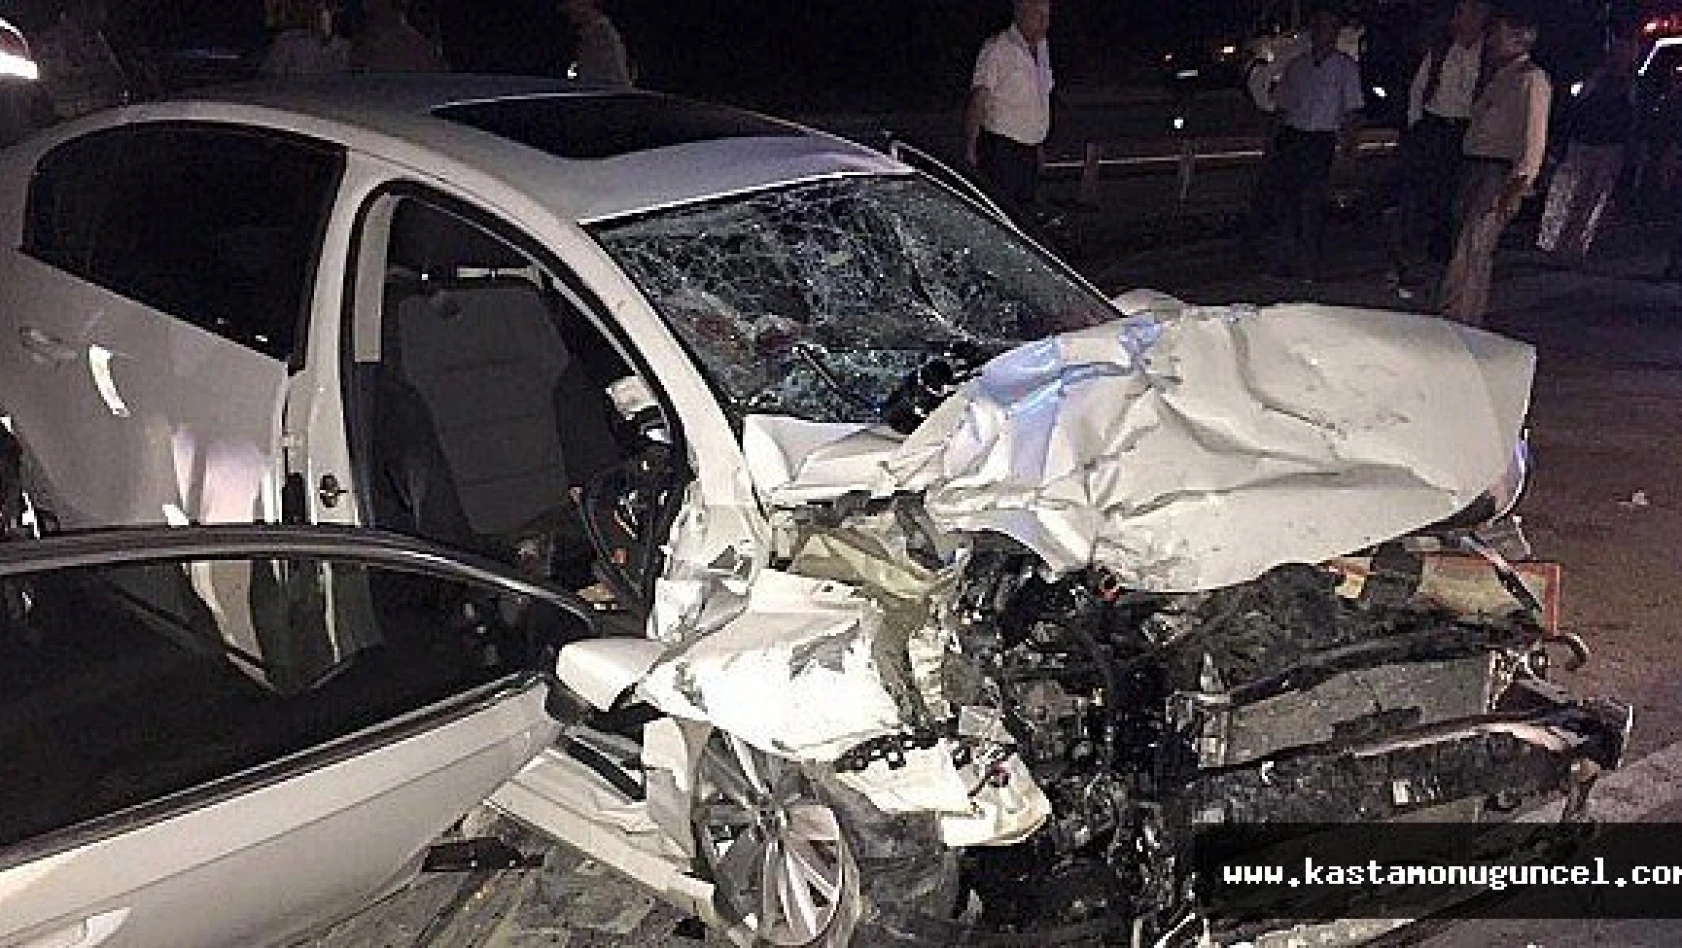 Kastamonu'da Trafik Kazalarında 38 Kişi Öldü